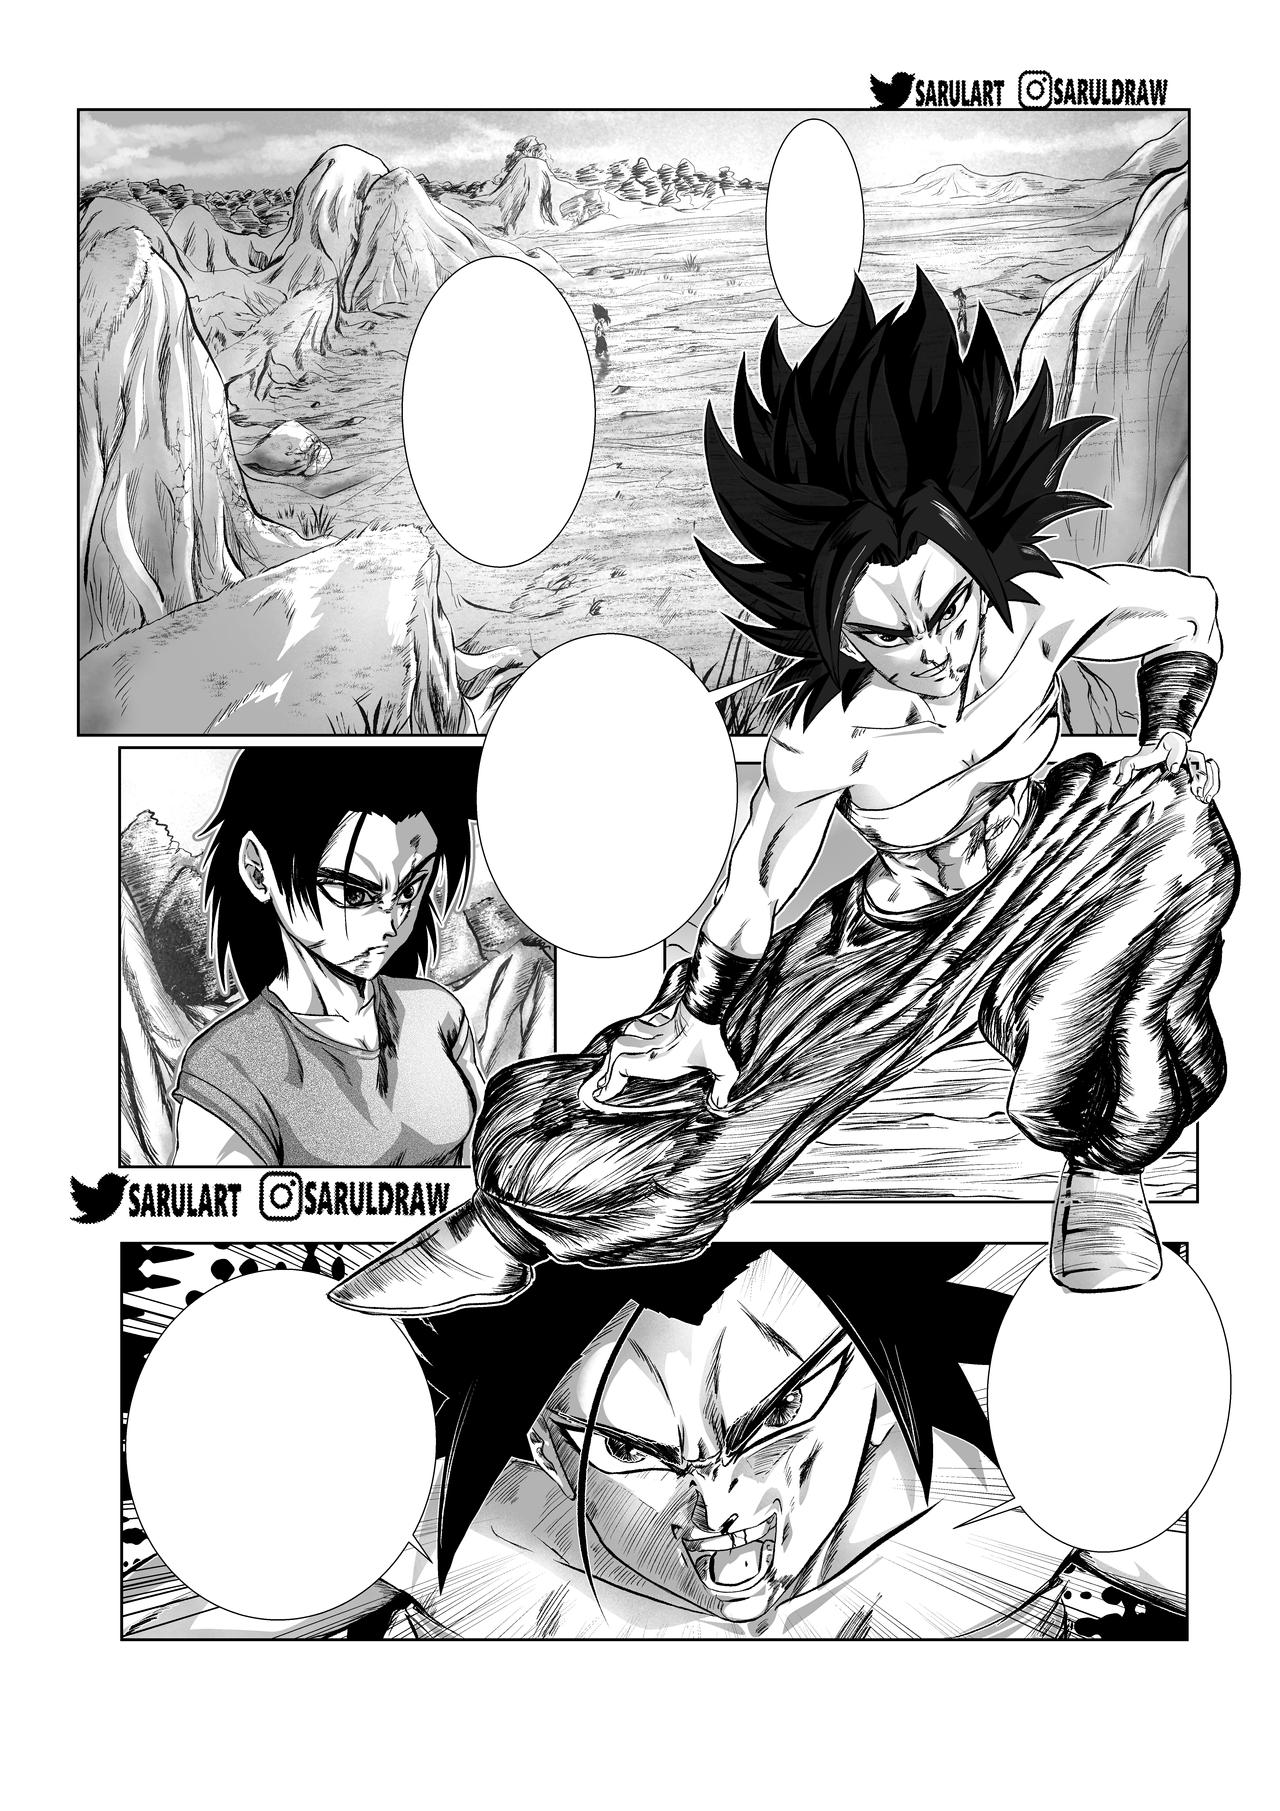 Moro Arc manga panel lol by Yusaika on DeviantArt